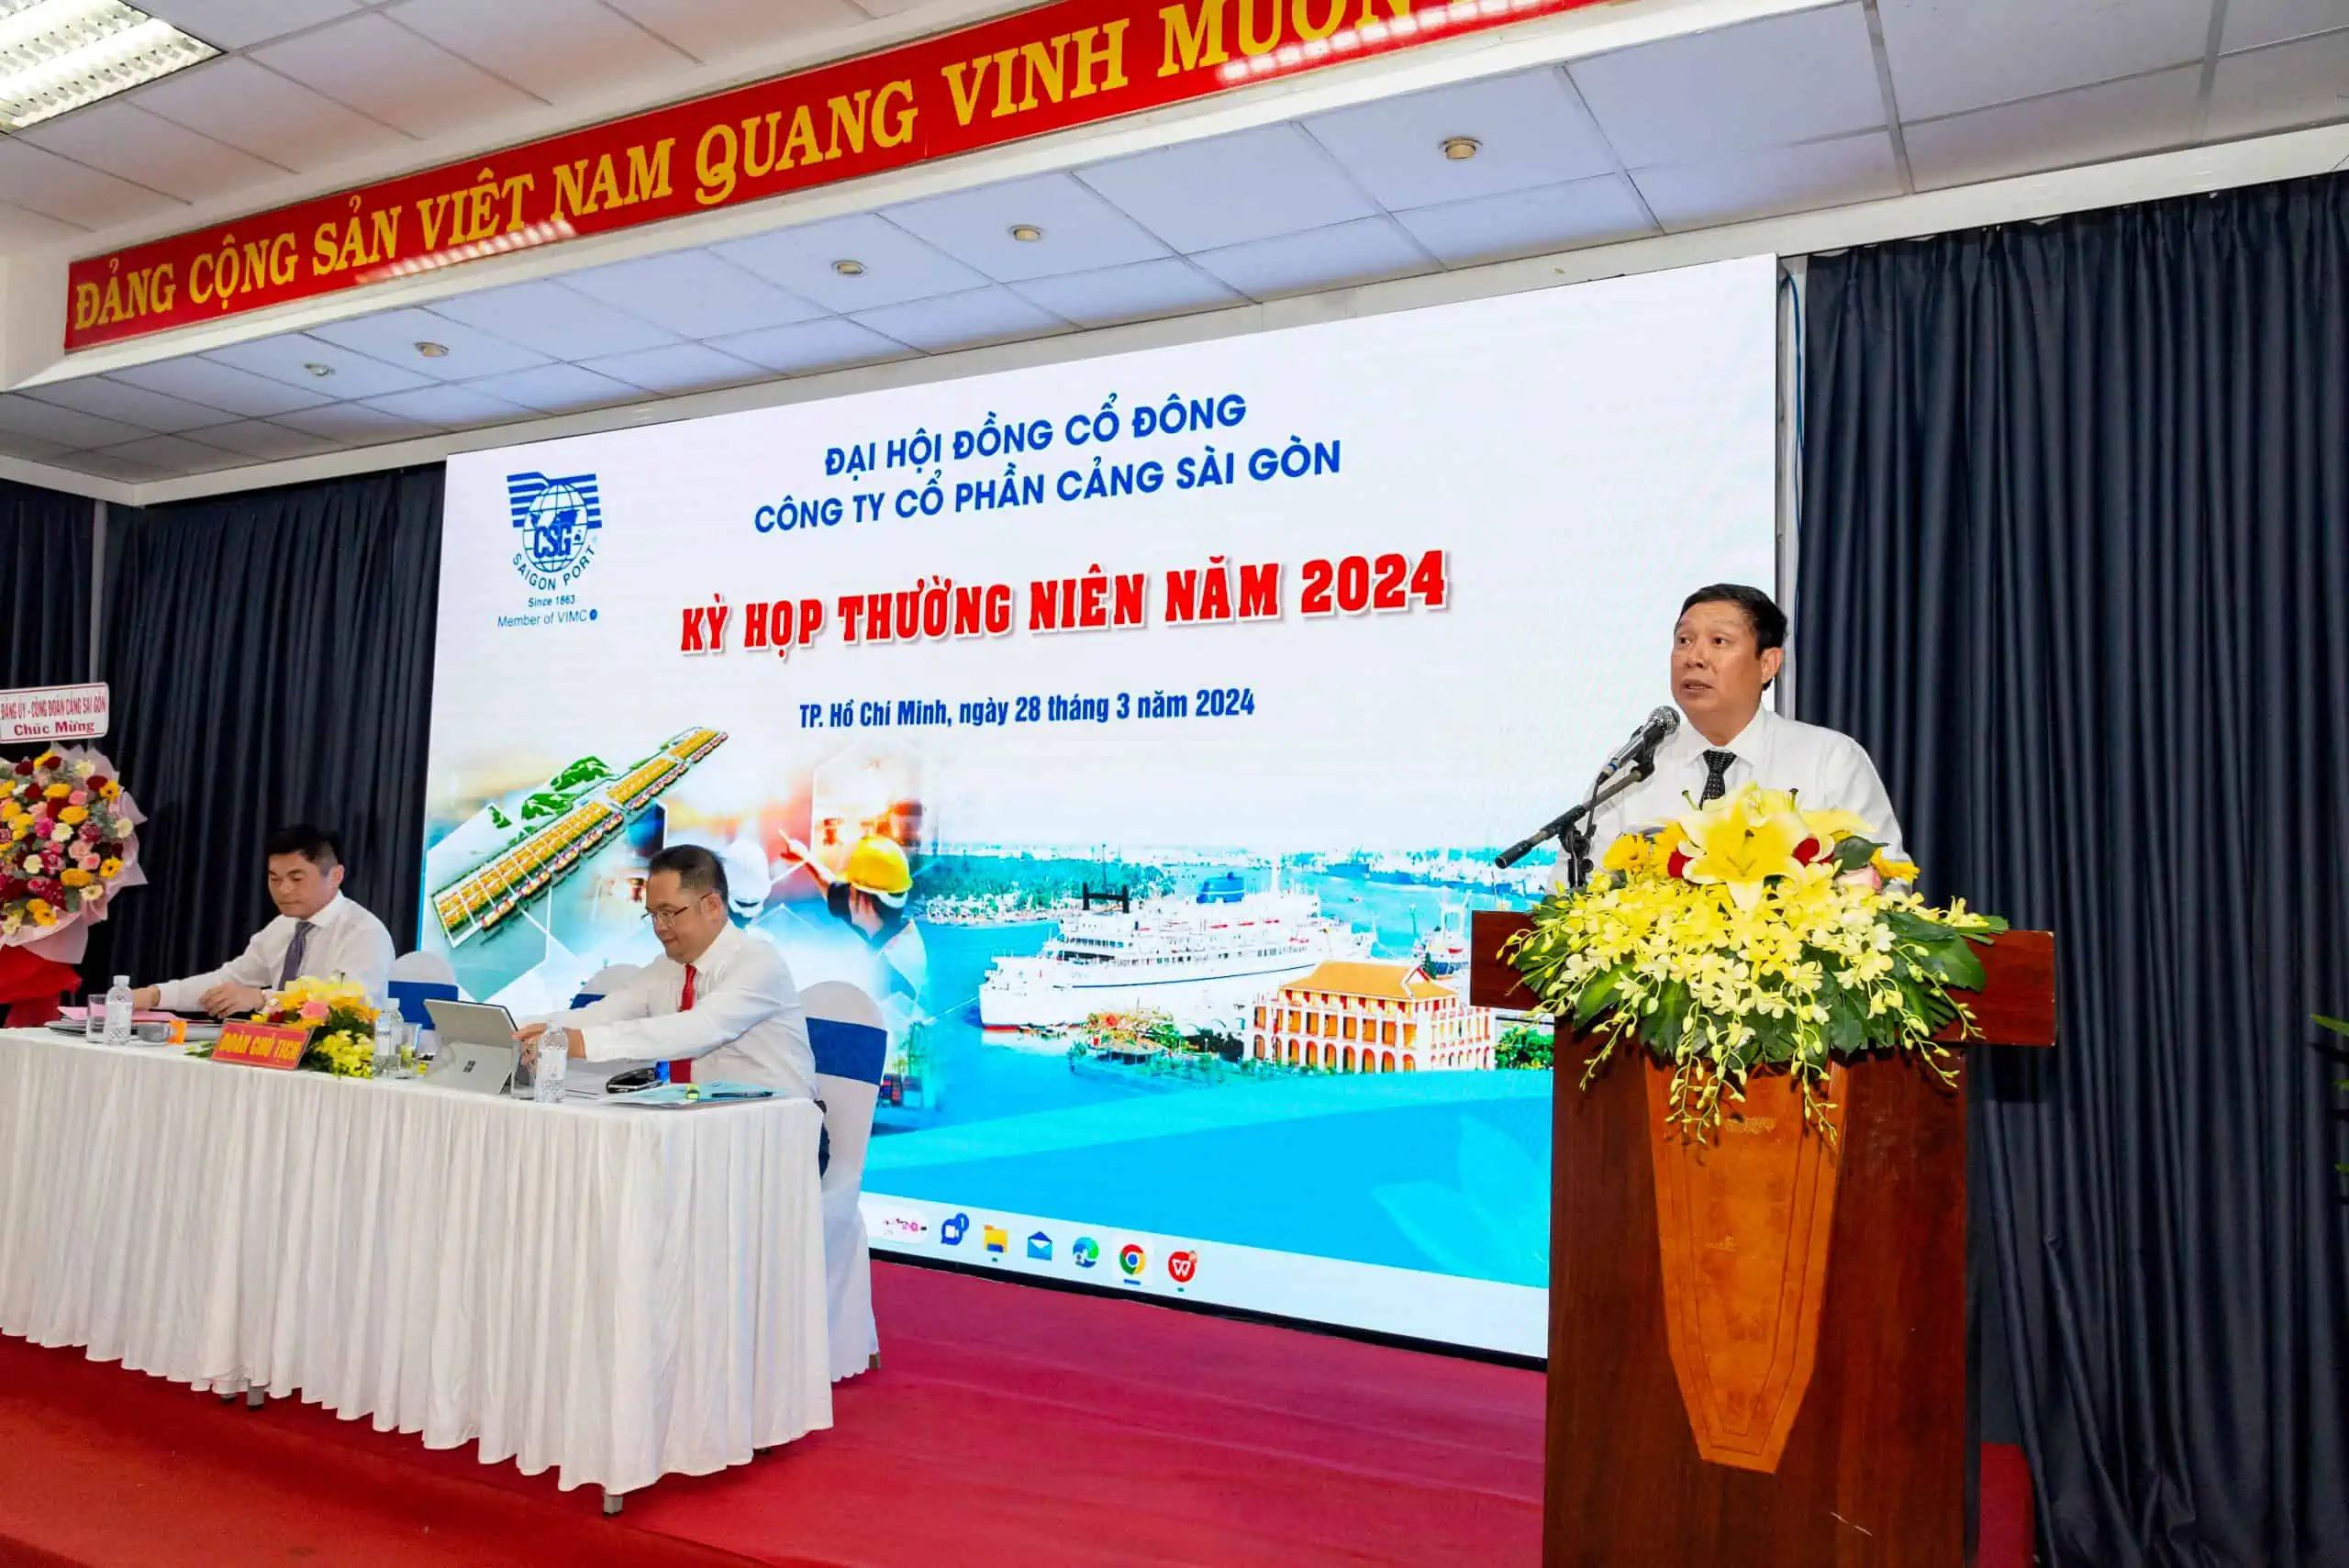 Ông Huỳnh Văn Cường - Chủ tịch HĐQT trình bày báo cáo tại Đại hội